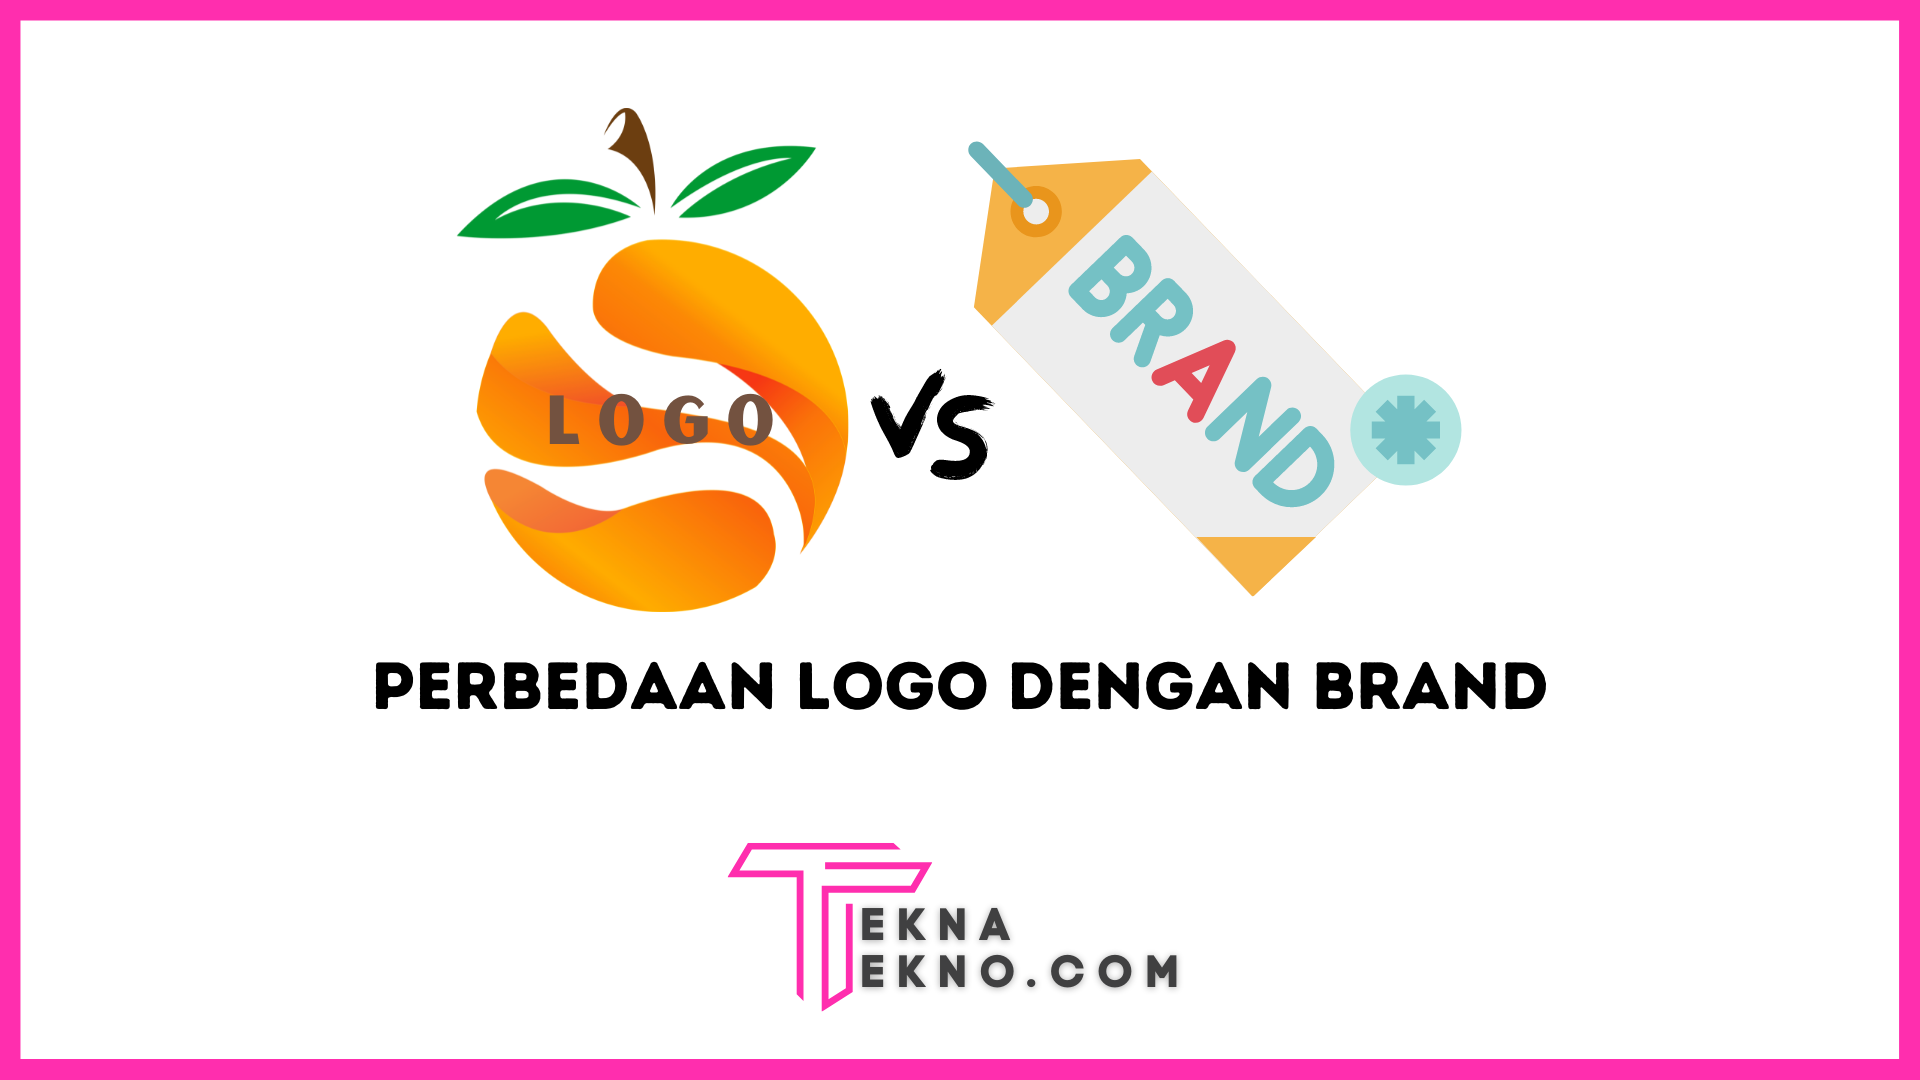 Logo dan Brand: Pengertian dan Perbedaan Diantaranya